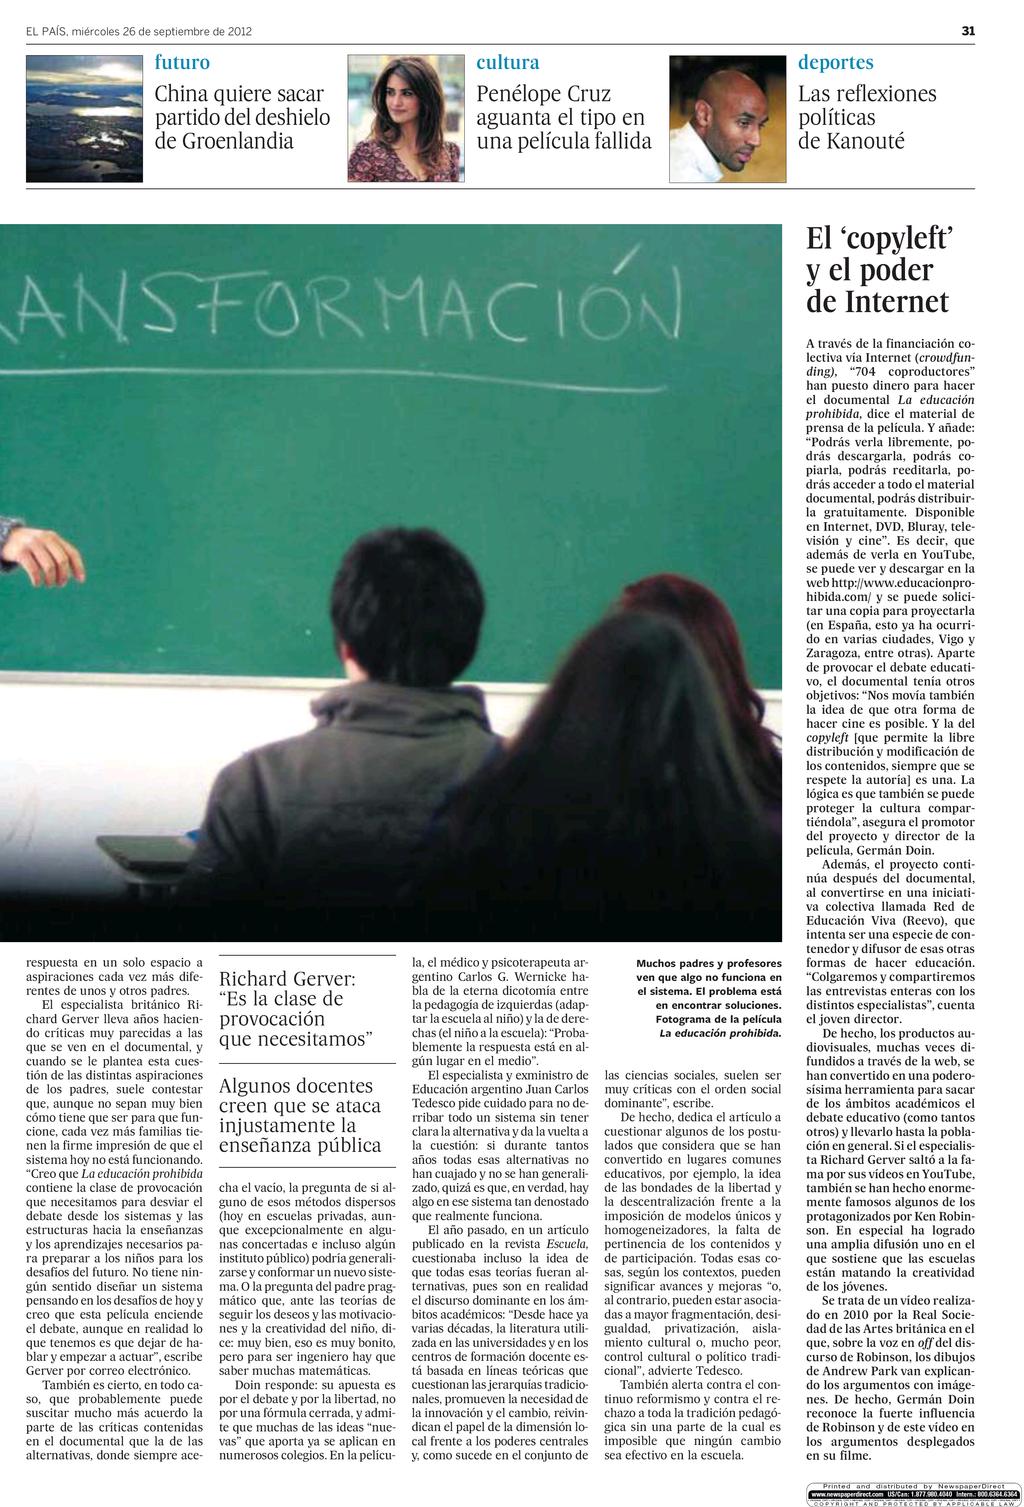 osko y Más - El País (País Vasco) - 26 sep 2012 - Page #31